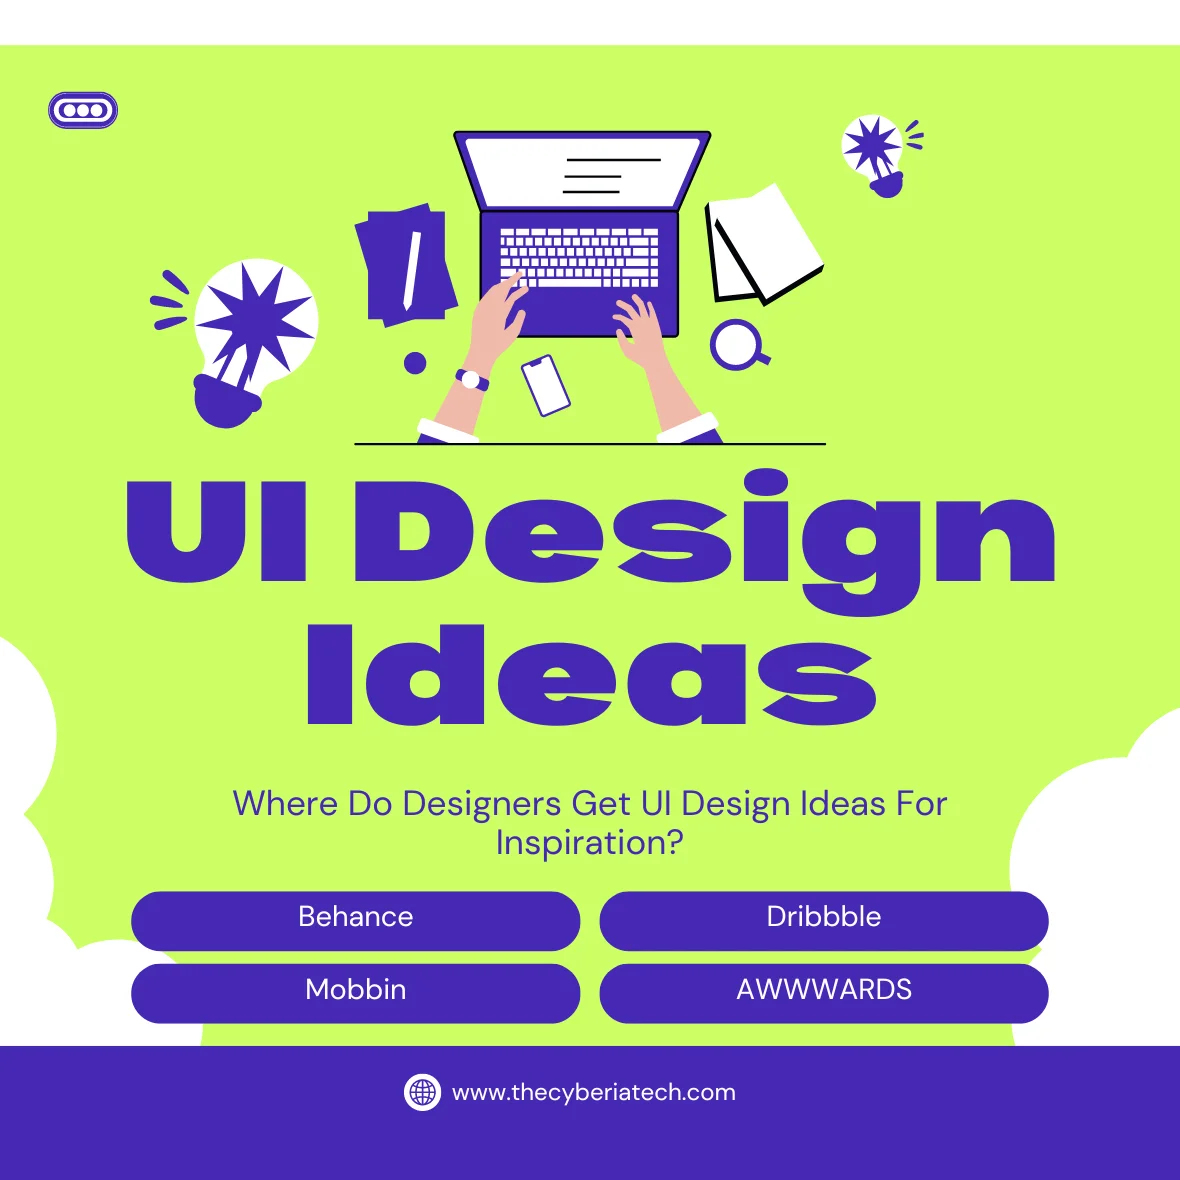 UI Design Ideas For Inspiration